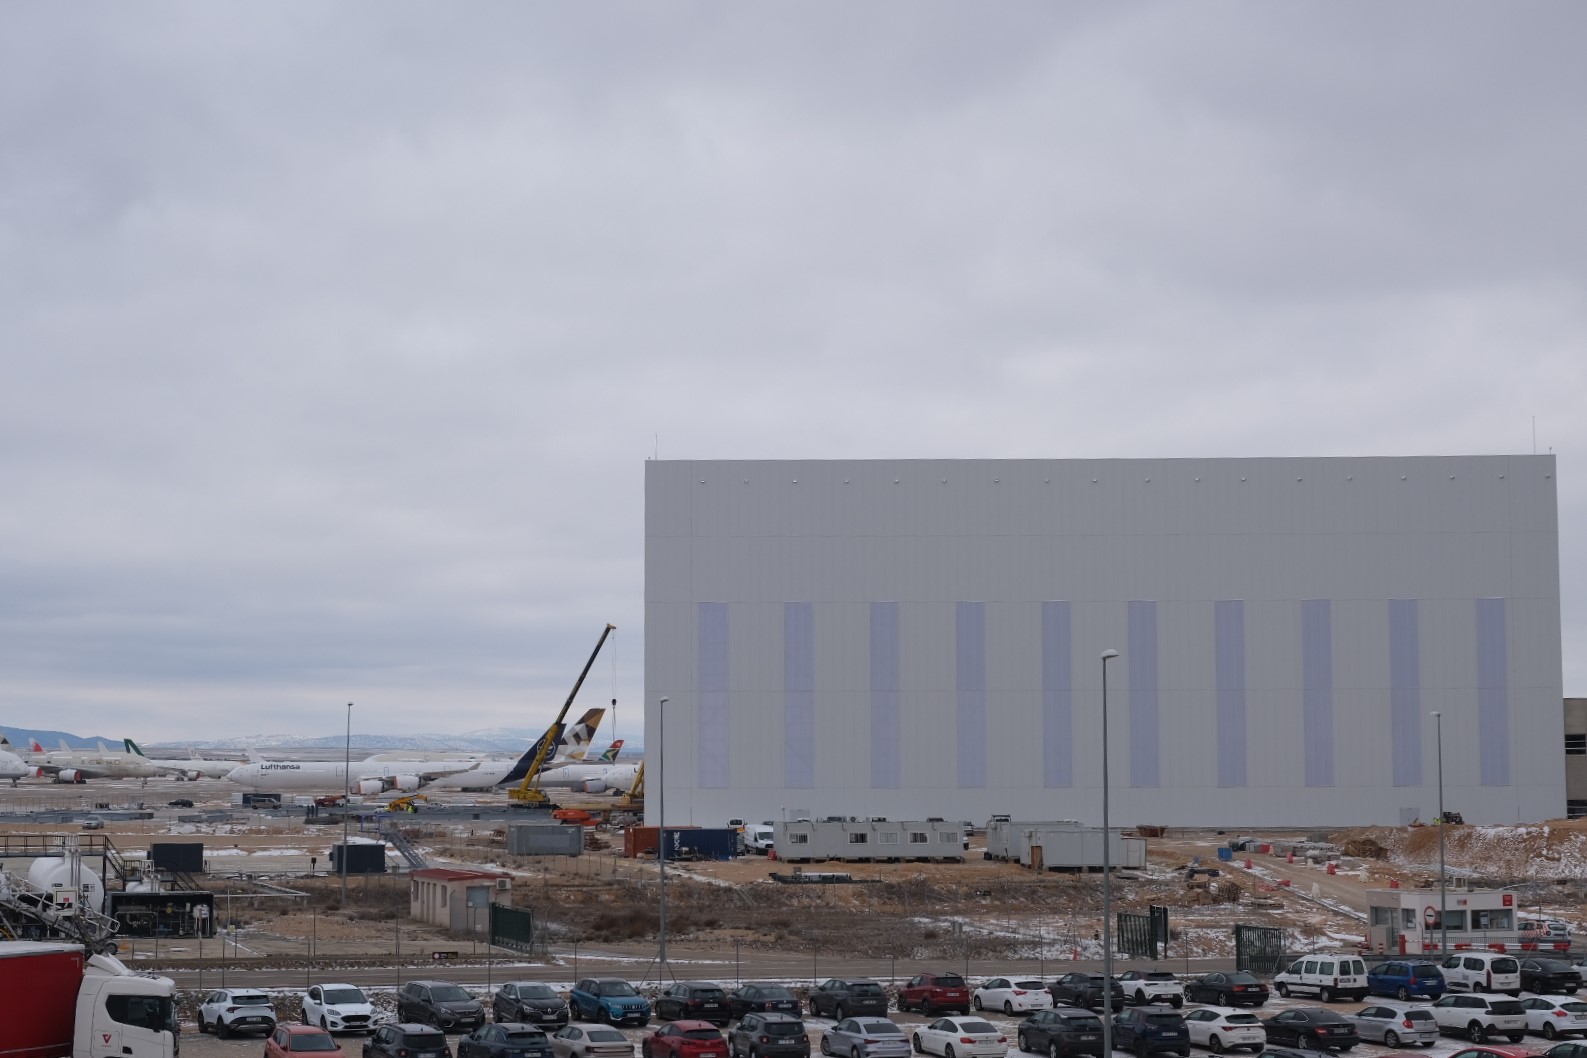 El nuevo hangar del aeropuerto de Teruel, todavía en construcción. FOTO: Marcos Díaz